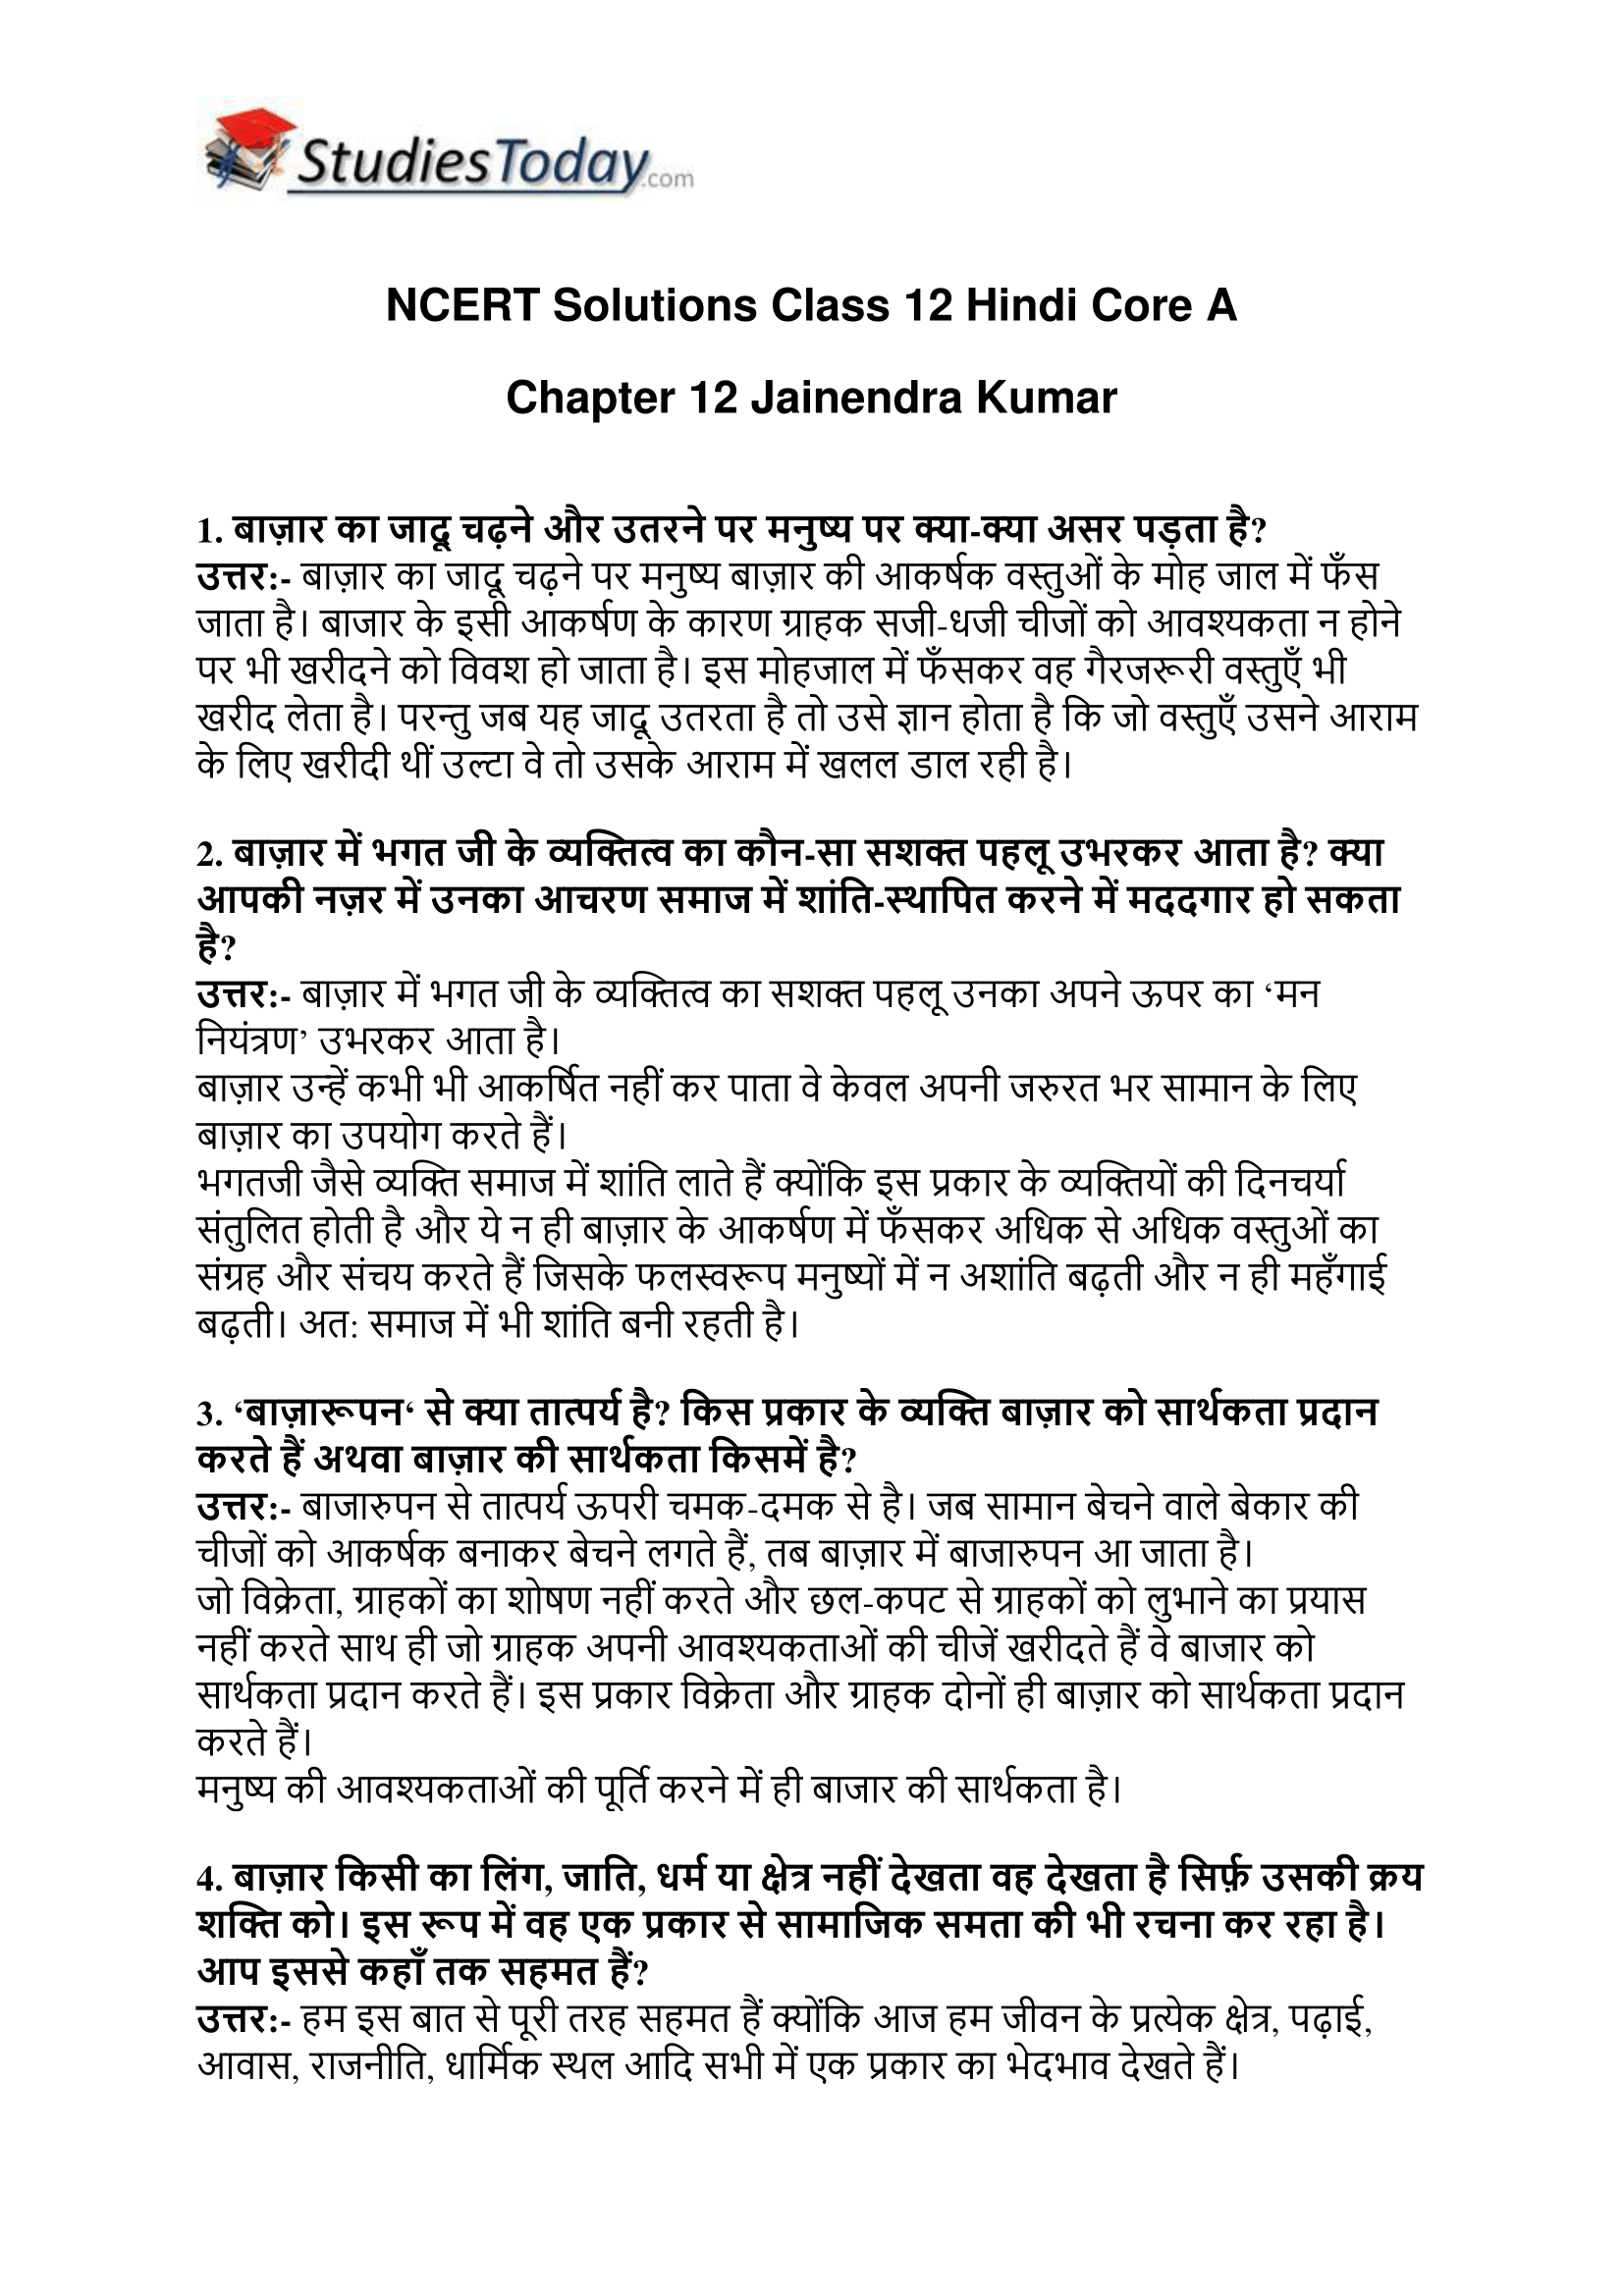 ncert-solutions-class-12-hindi-core-a-chapter-12-jainendra-kumar-1